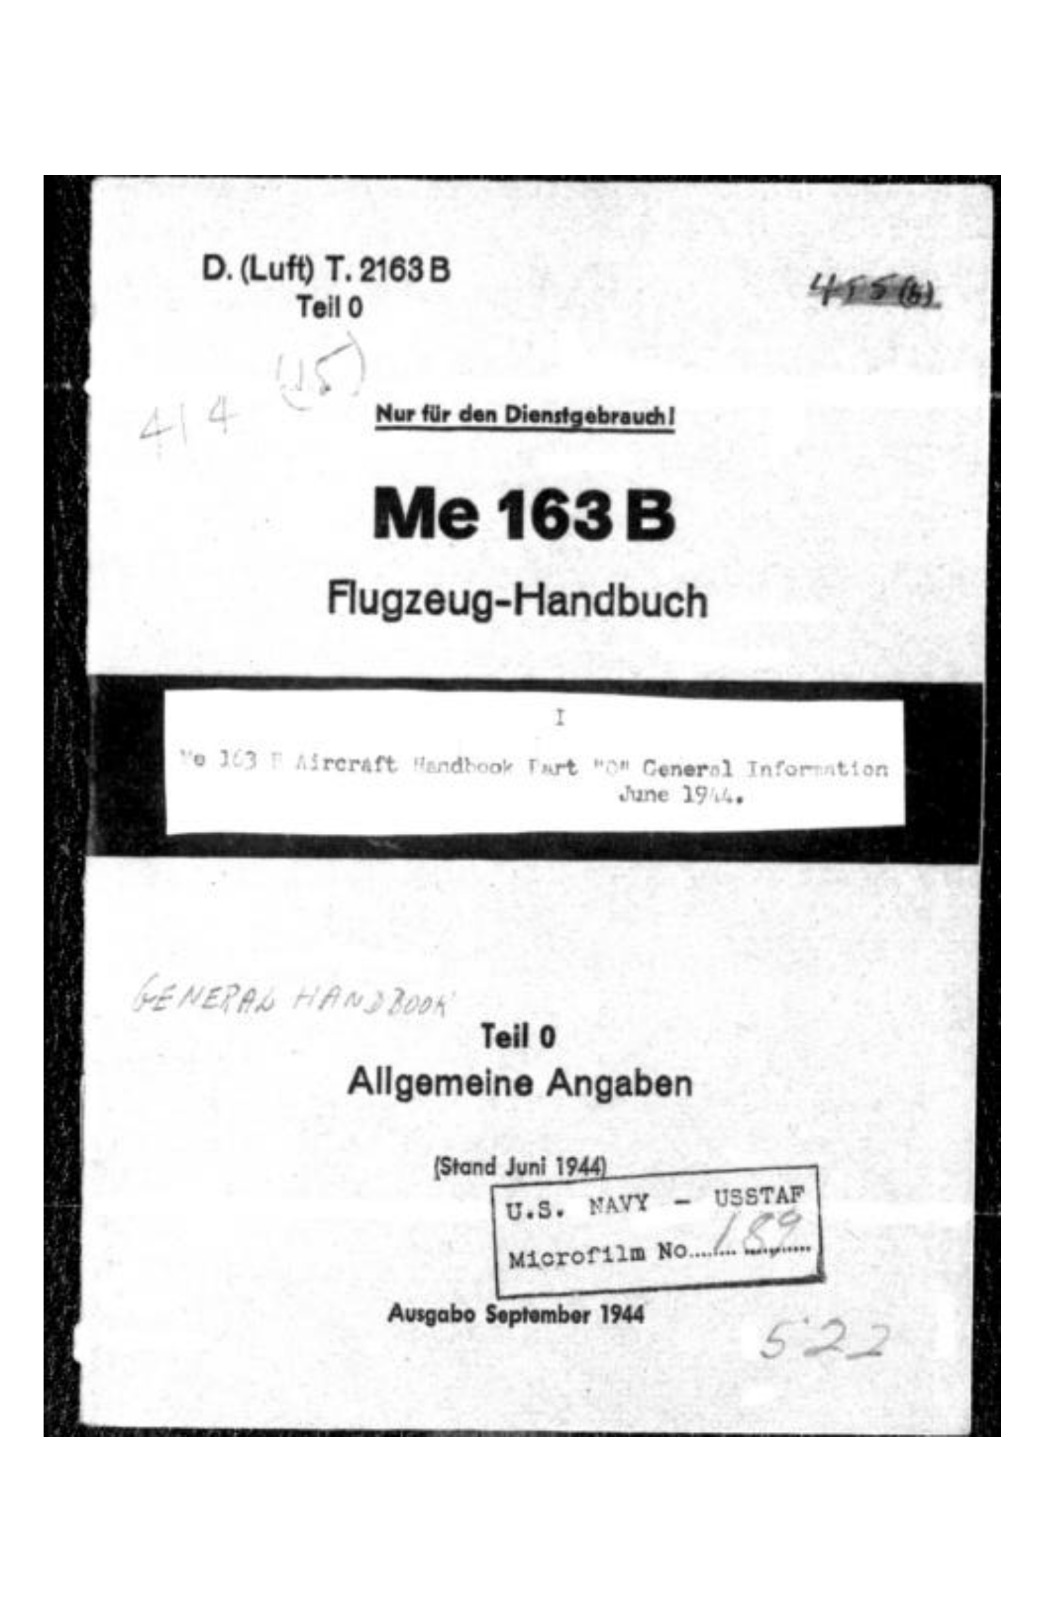 297 Page German Messerschmitt Me 163 B & Me 262 A-1 Flugzeug Handbuch on CD